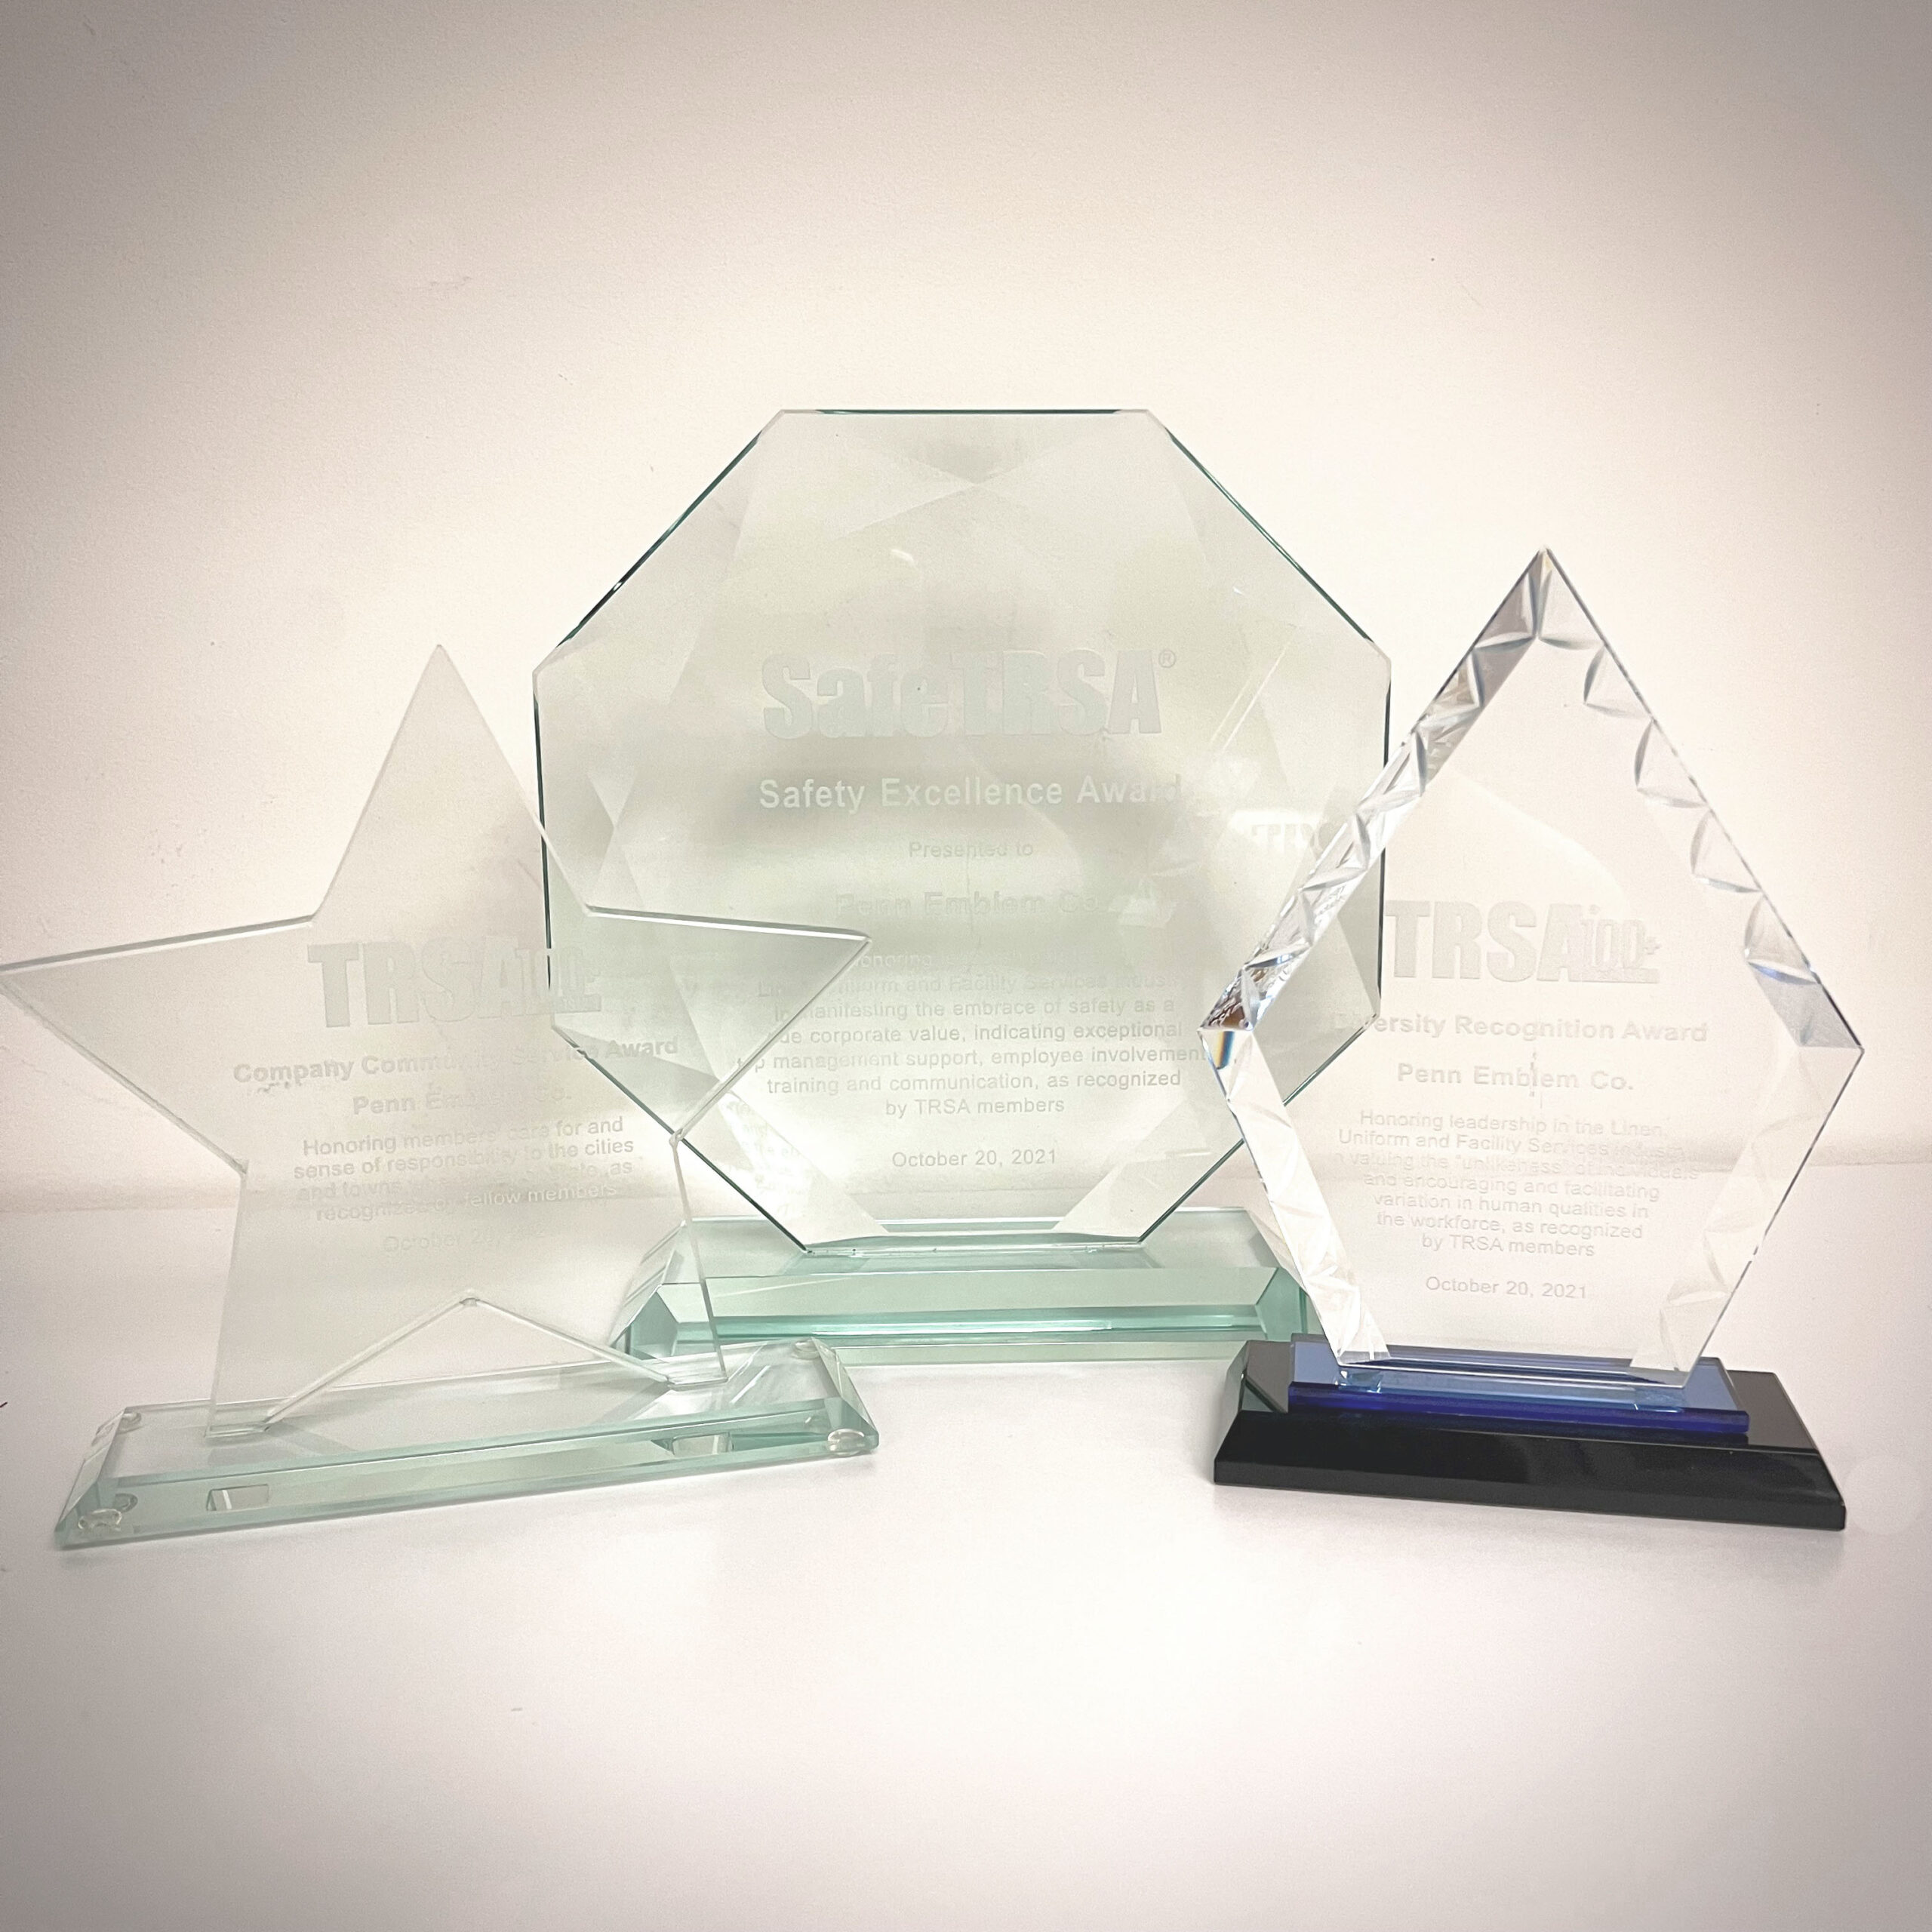 blog - Penn Emblem Wins TRSA 2021 Diversity Award